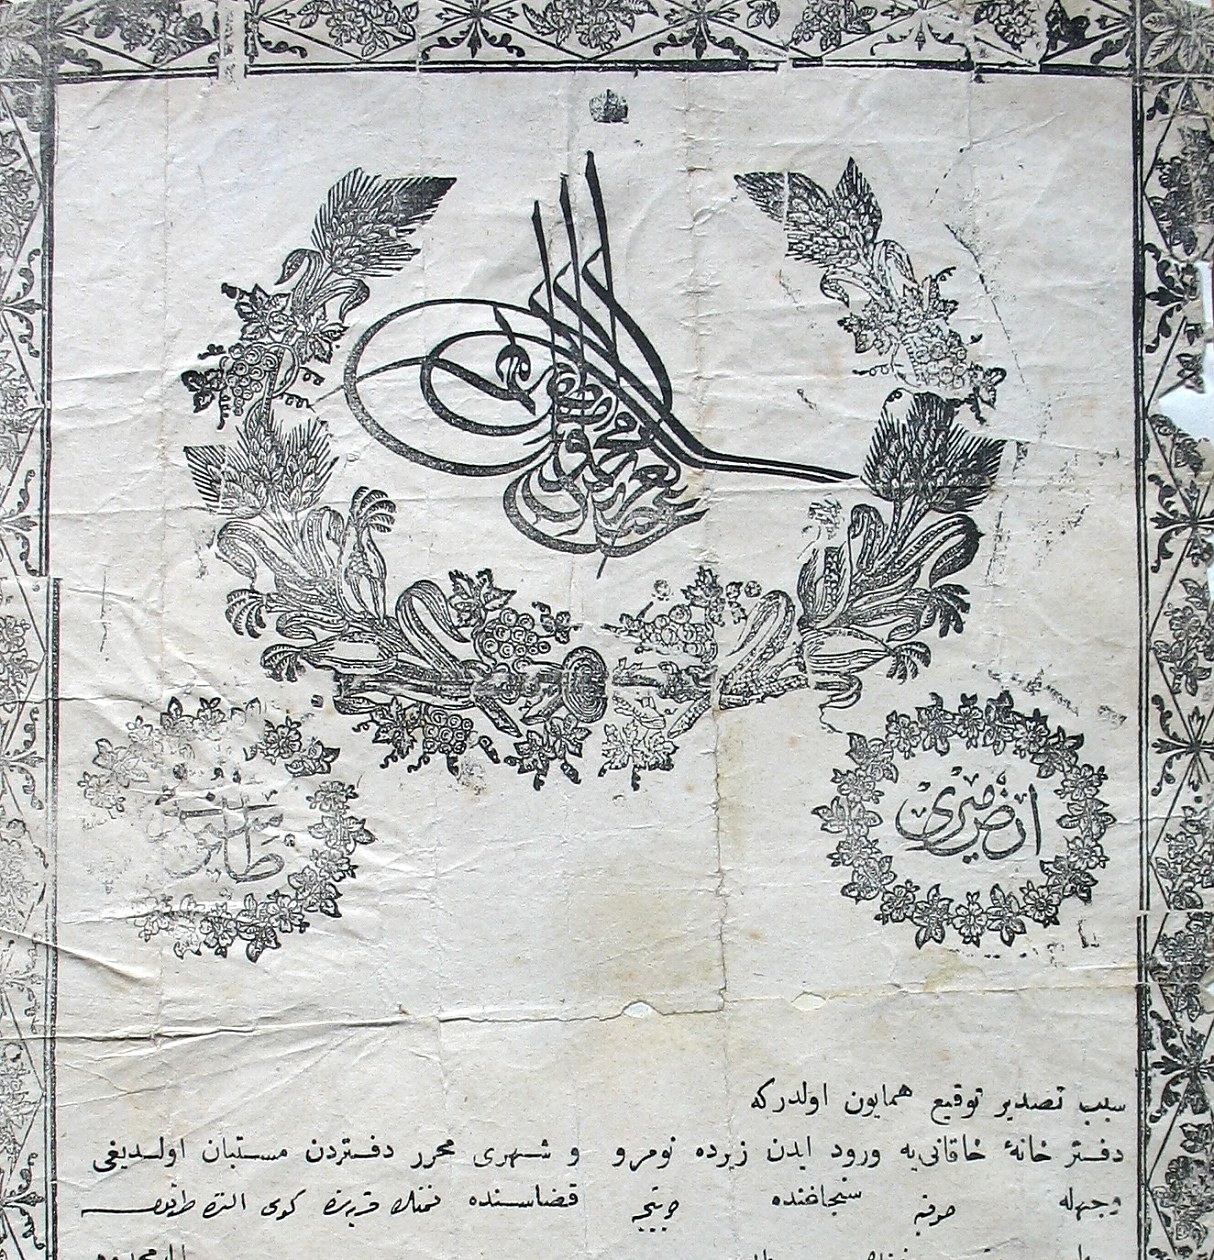 Плетеницата с името и титлата на султана, слагана върху монетите в Османската империя, се казвала тура.